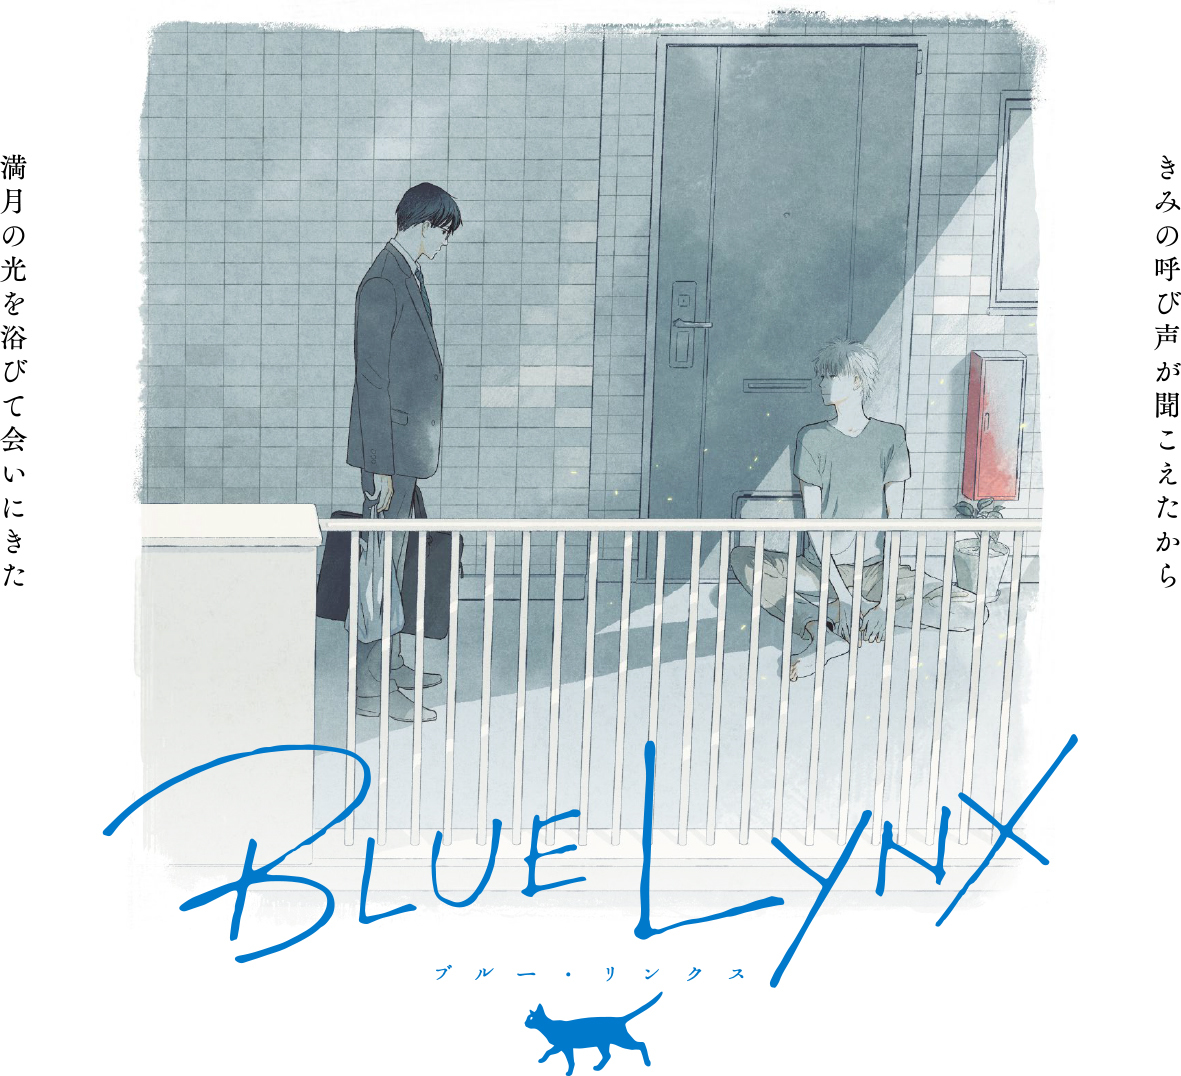 画像 フジテレビによるblに特化したアニメレーベル Blue Lynx 誕生 イラストショートストーリー公開 の画像2 2 Spice エンタメ特化型情報メディア スパイス